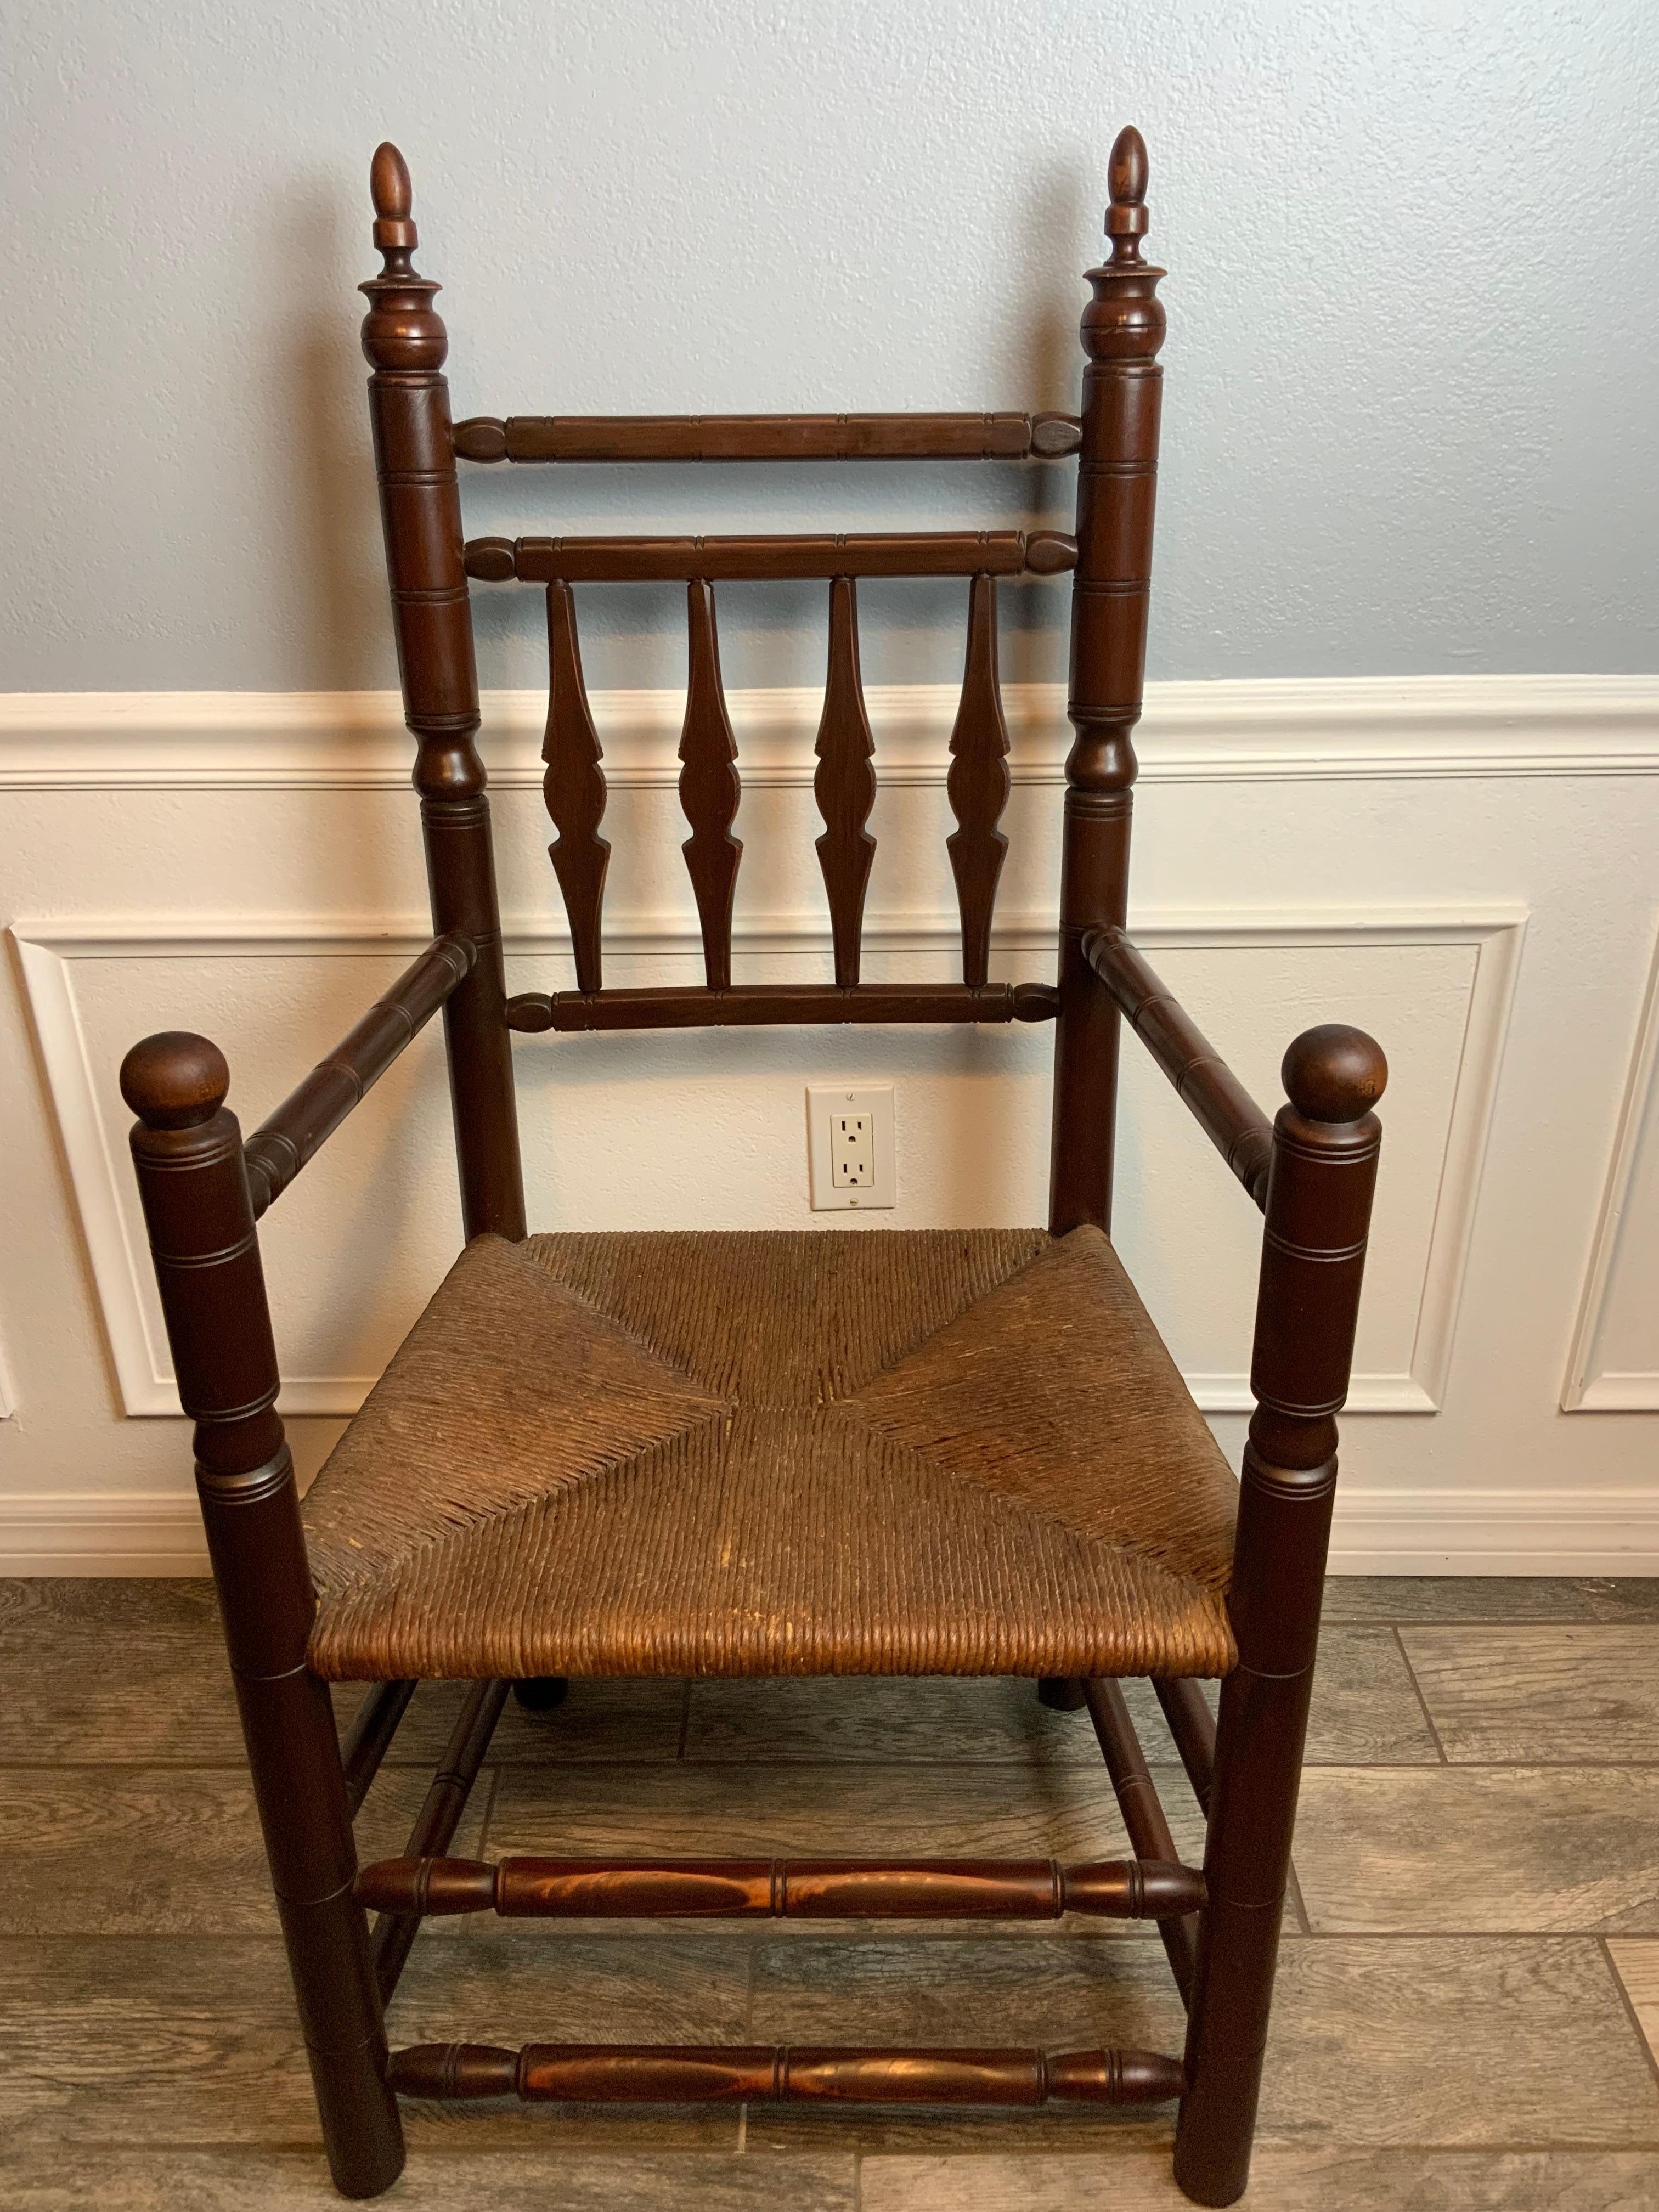 Eine sehr klassische Form A eines New England Style Carver Stuhls aus dem 17. Jahrhundert, der in den späten 1800er oder frühen 1900er Jahren hergestellt zu sein scheint.  Dieser sehr gut verarbeitete Stuhl ist aus Ahorn und Esche gefertigt und hat